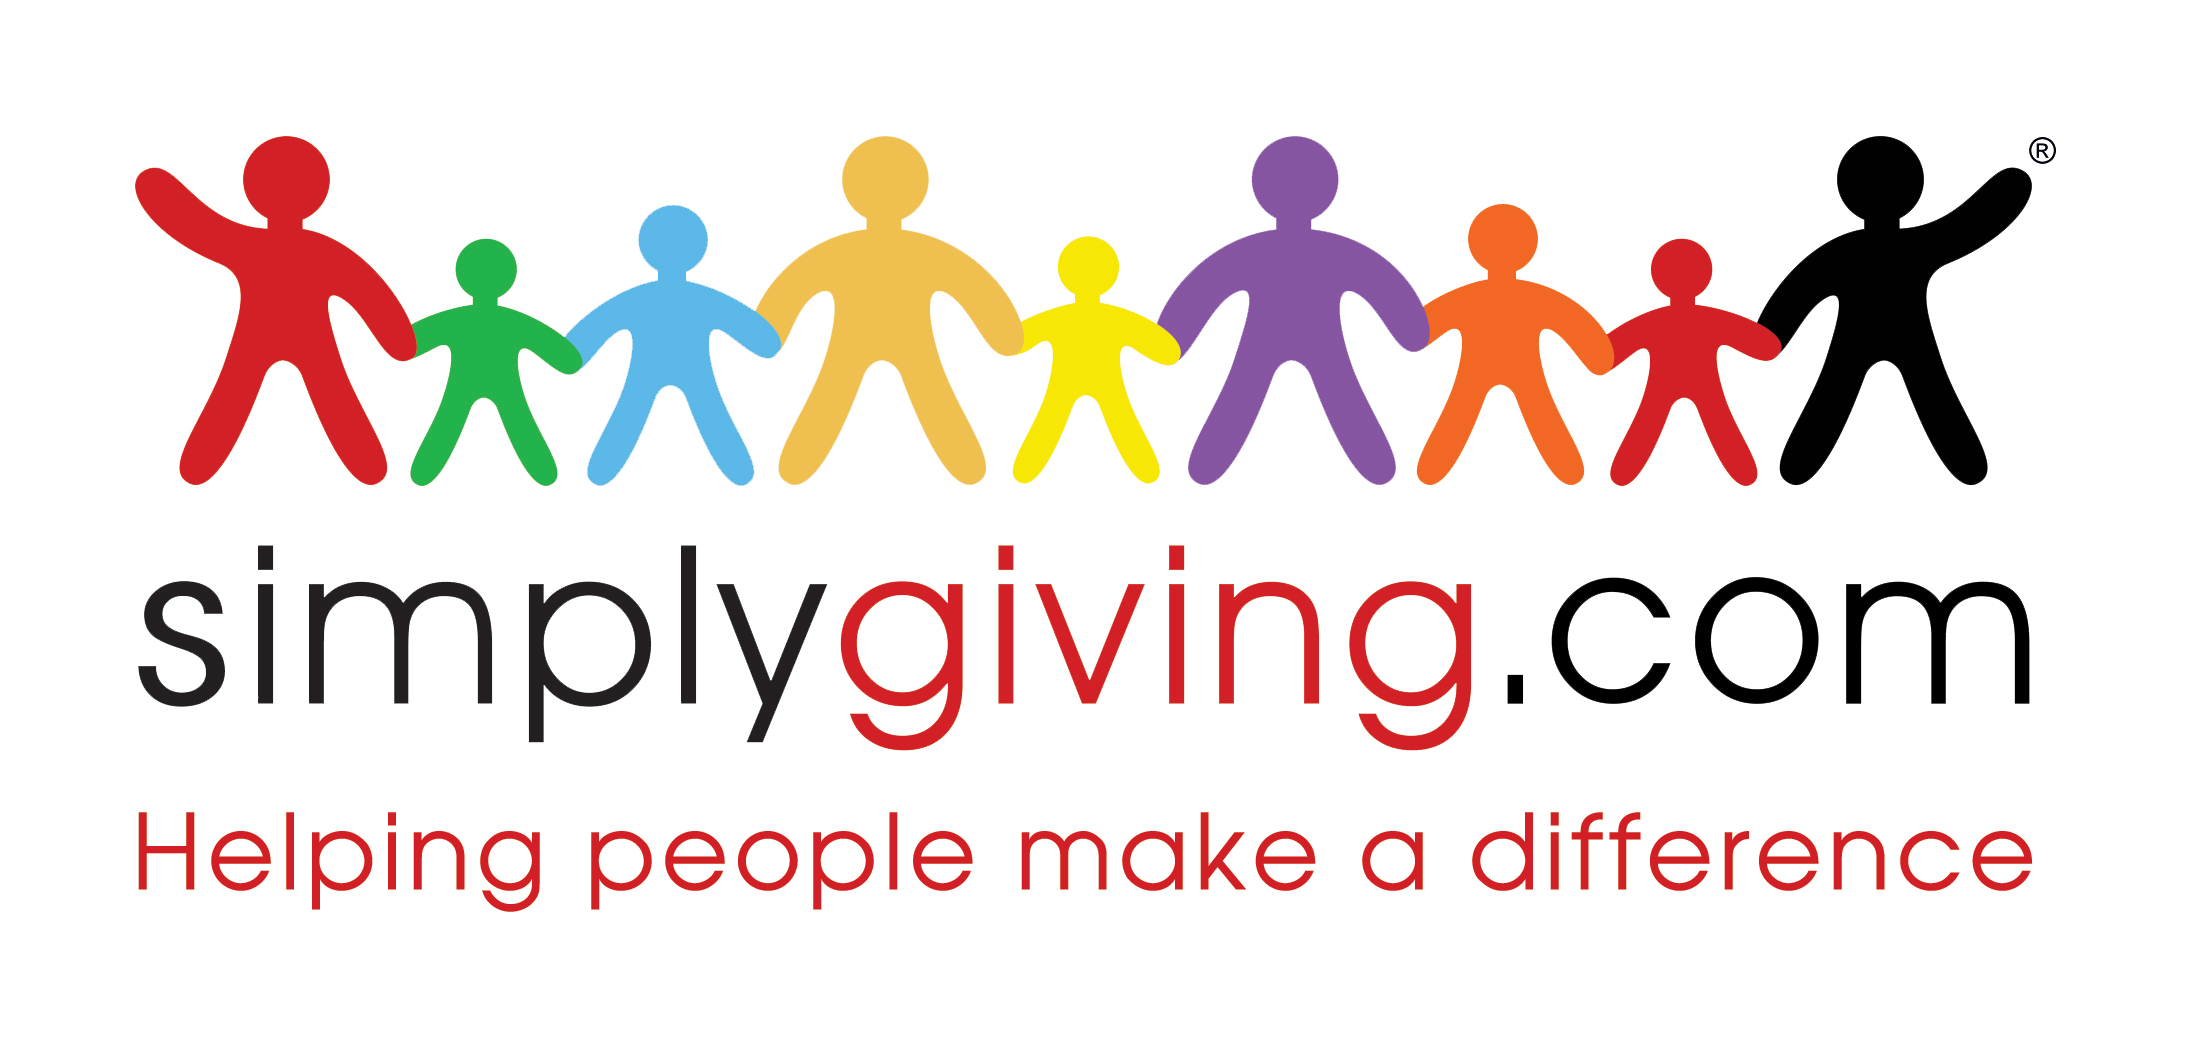 SimplyGiving.com_Logo_2015